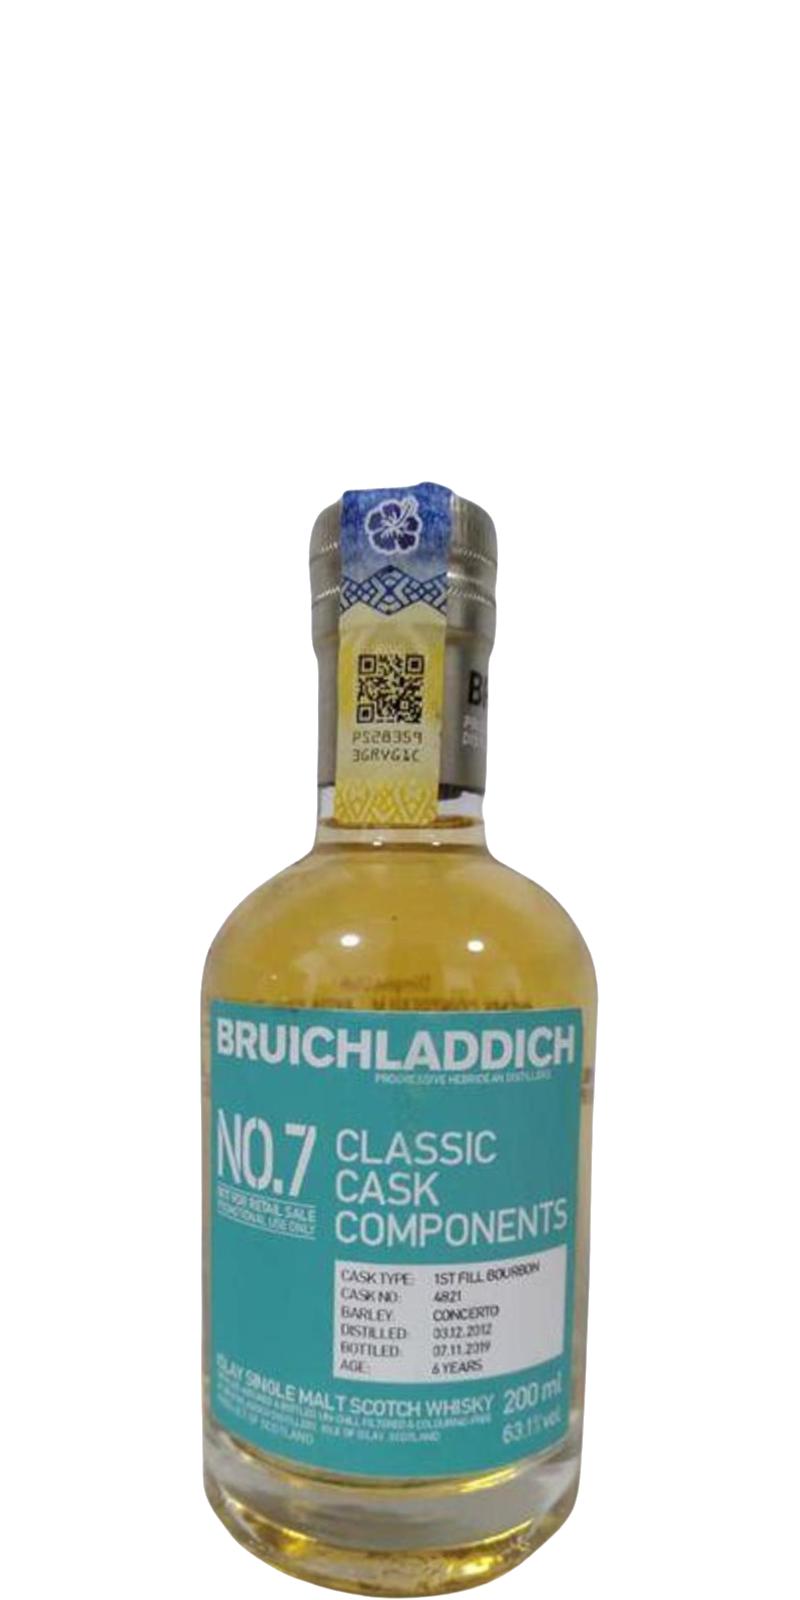 Bruichladdich 2012 Classic Cask Components No. 7 1st Fill Bourbon 4821 63.1% 200ml